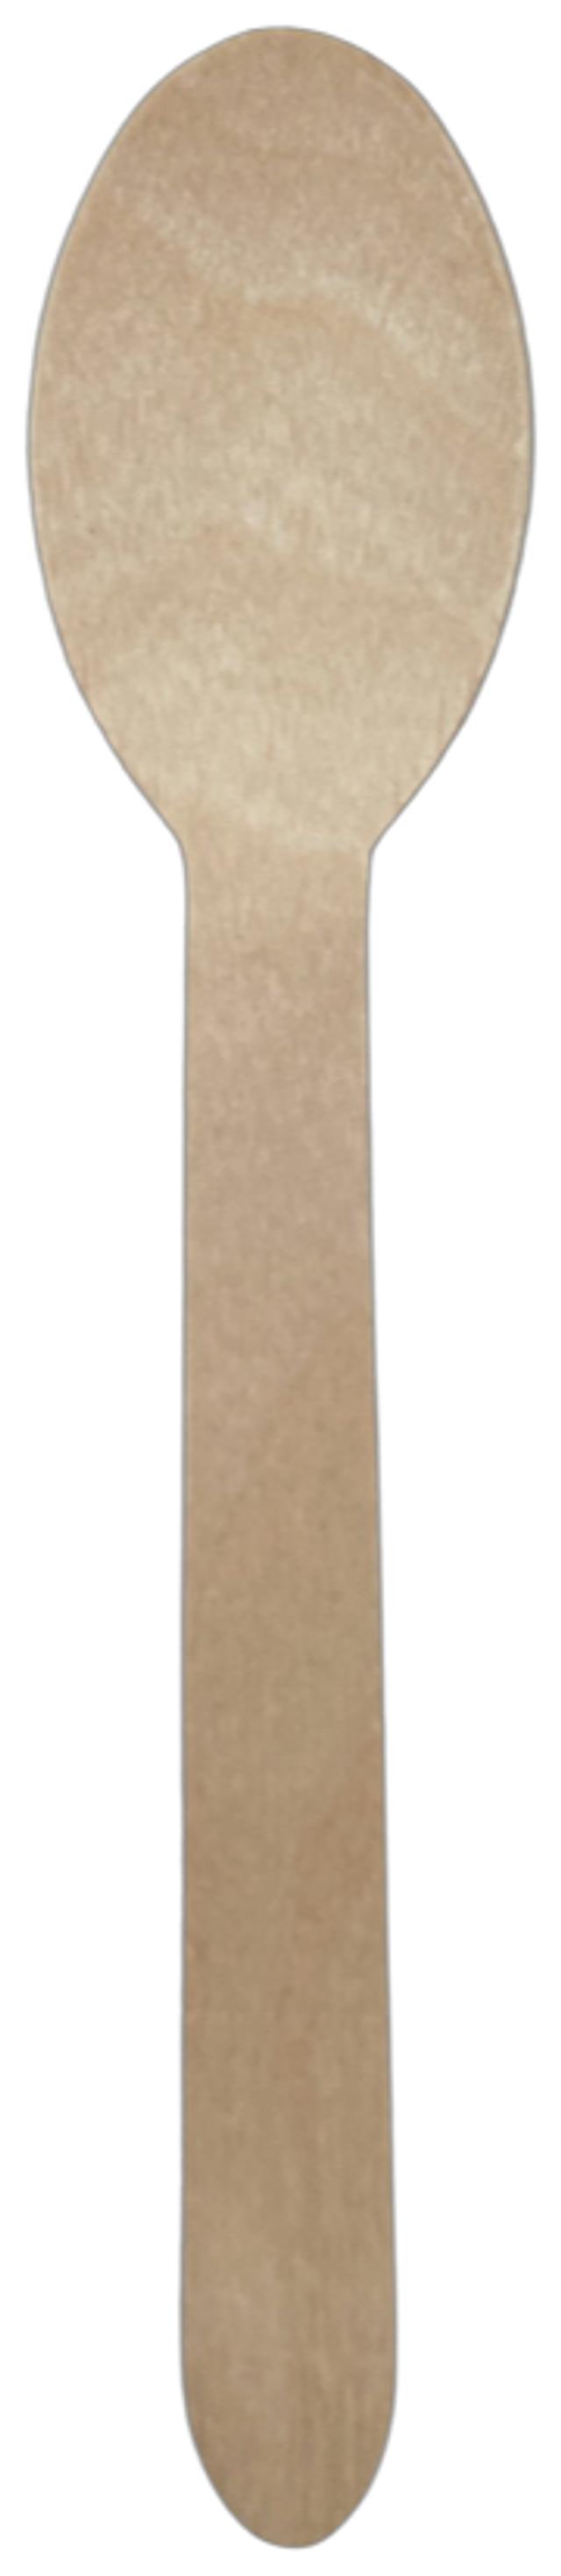 Spen puinen lusikka 16cm 12kpl